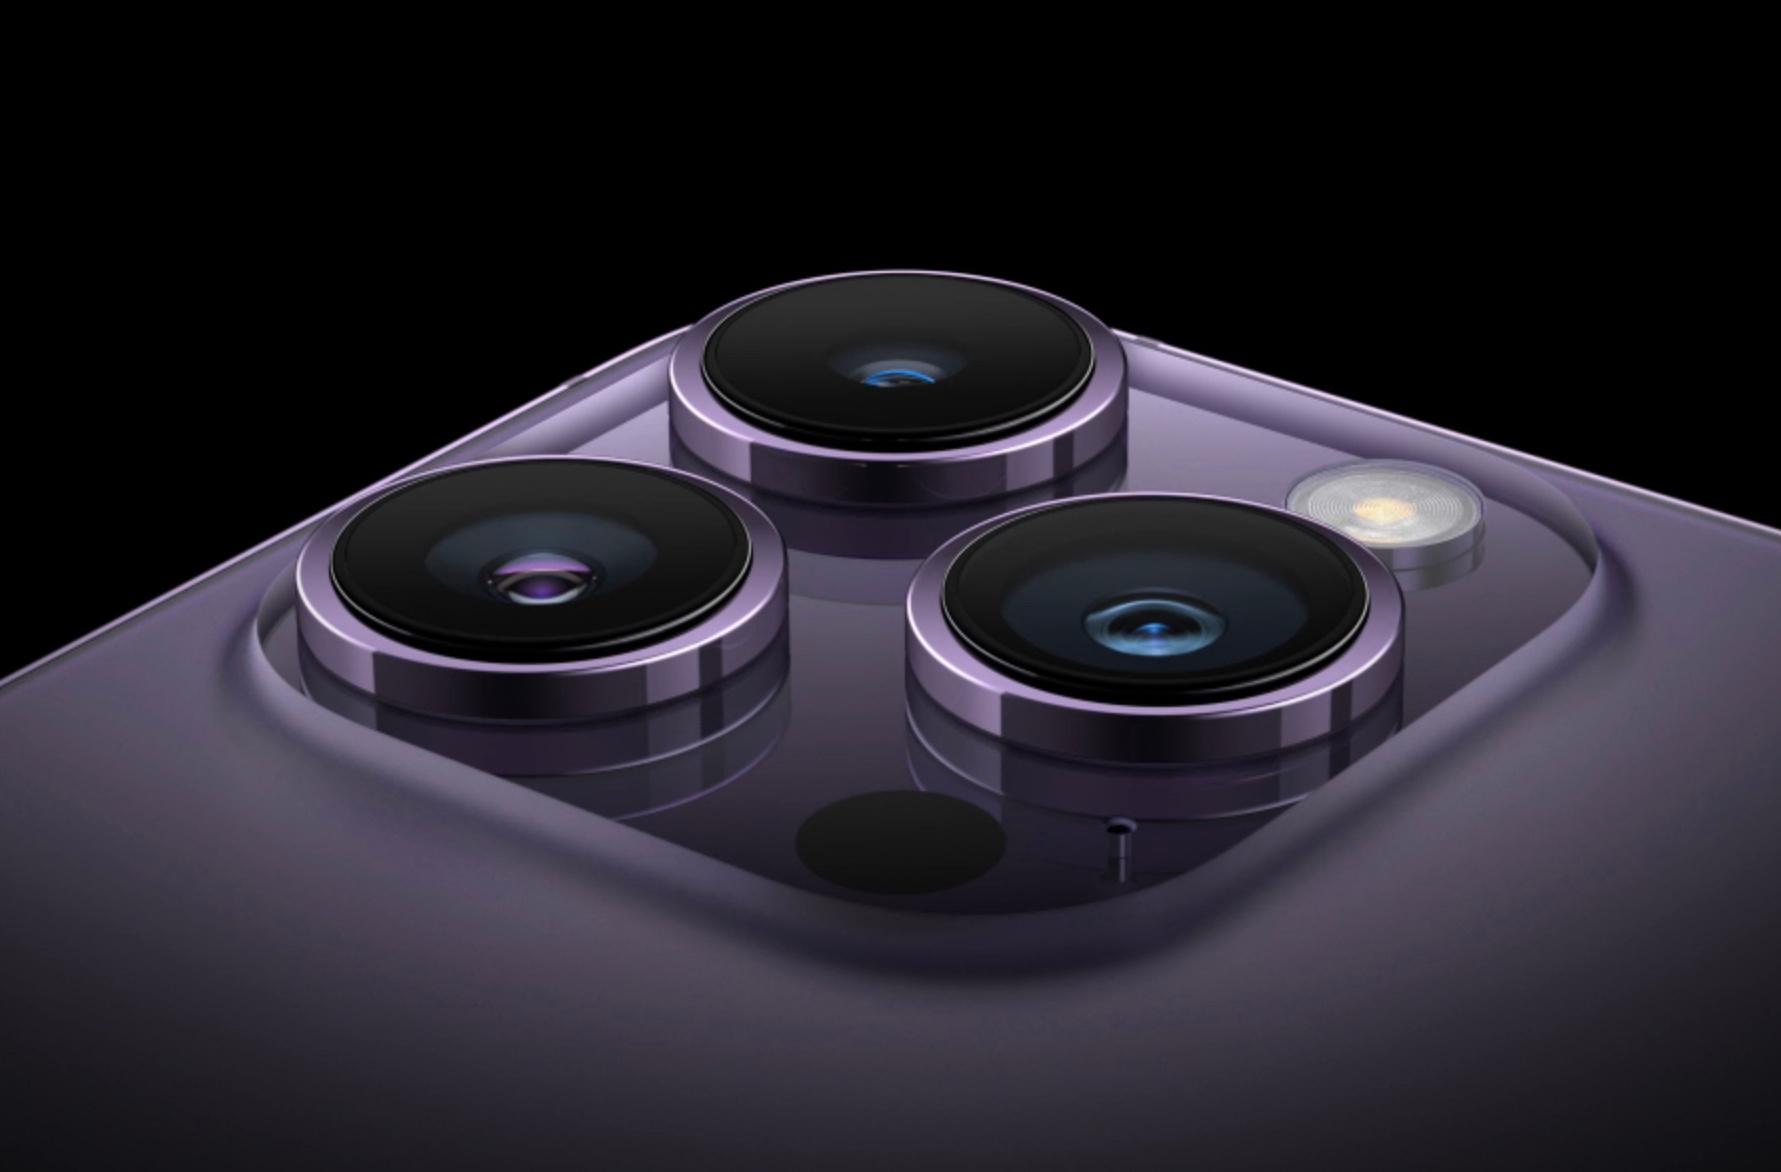 L'îlot des appareils photo des modèles iPhone 14 Pro.